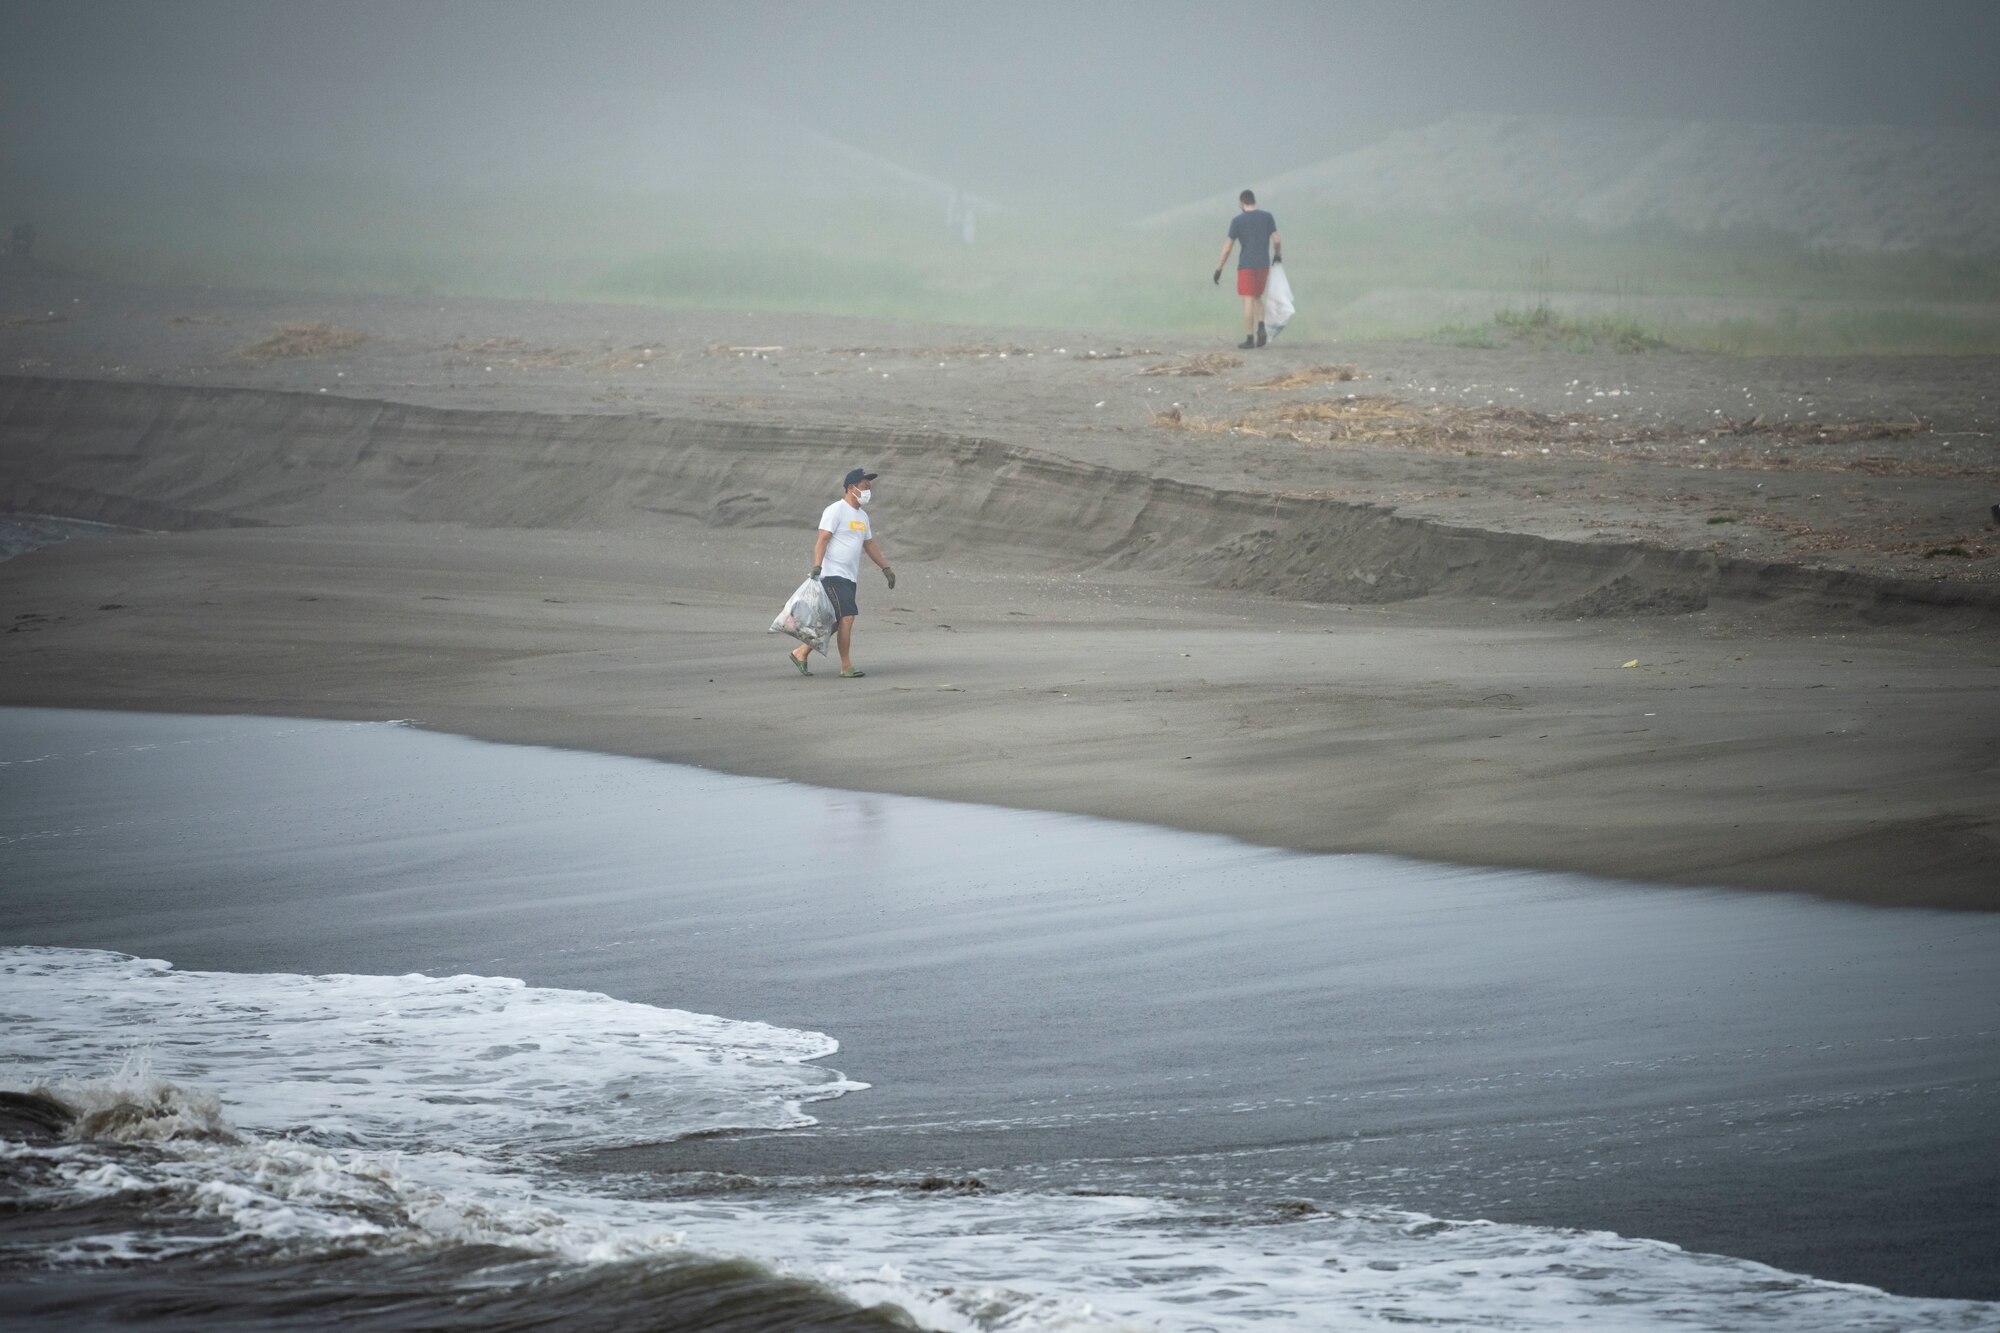 A Team Misawa member holds garbage bags while walking next to waves crashing.